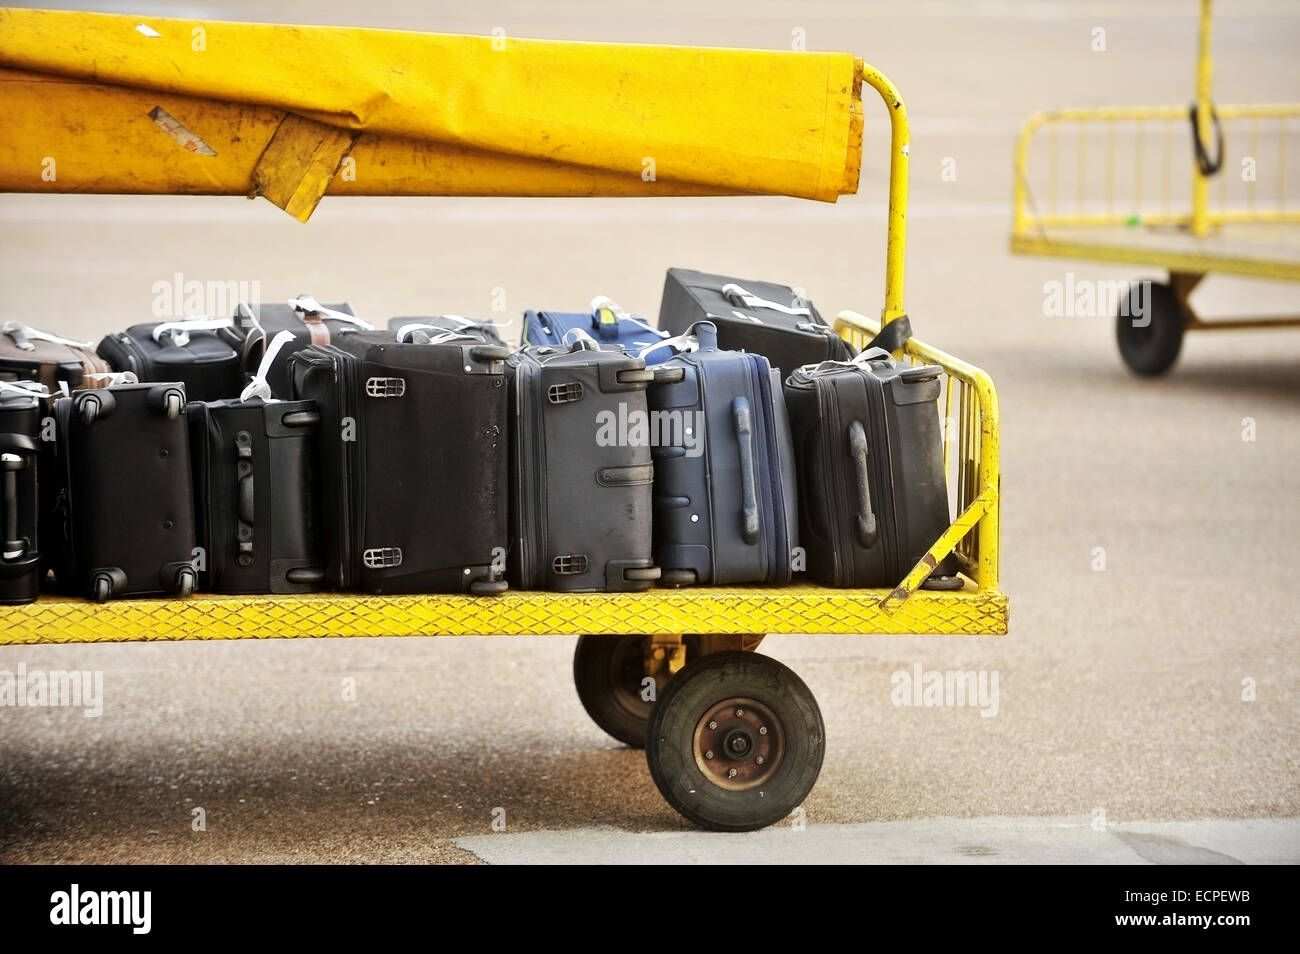 Gelben Wagen beladen mit Gepäck auf einer asphaltierten Strecke Flughafen Stockfoto